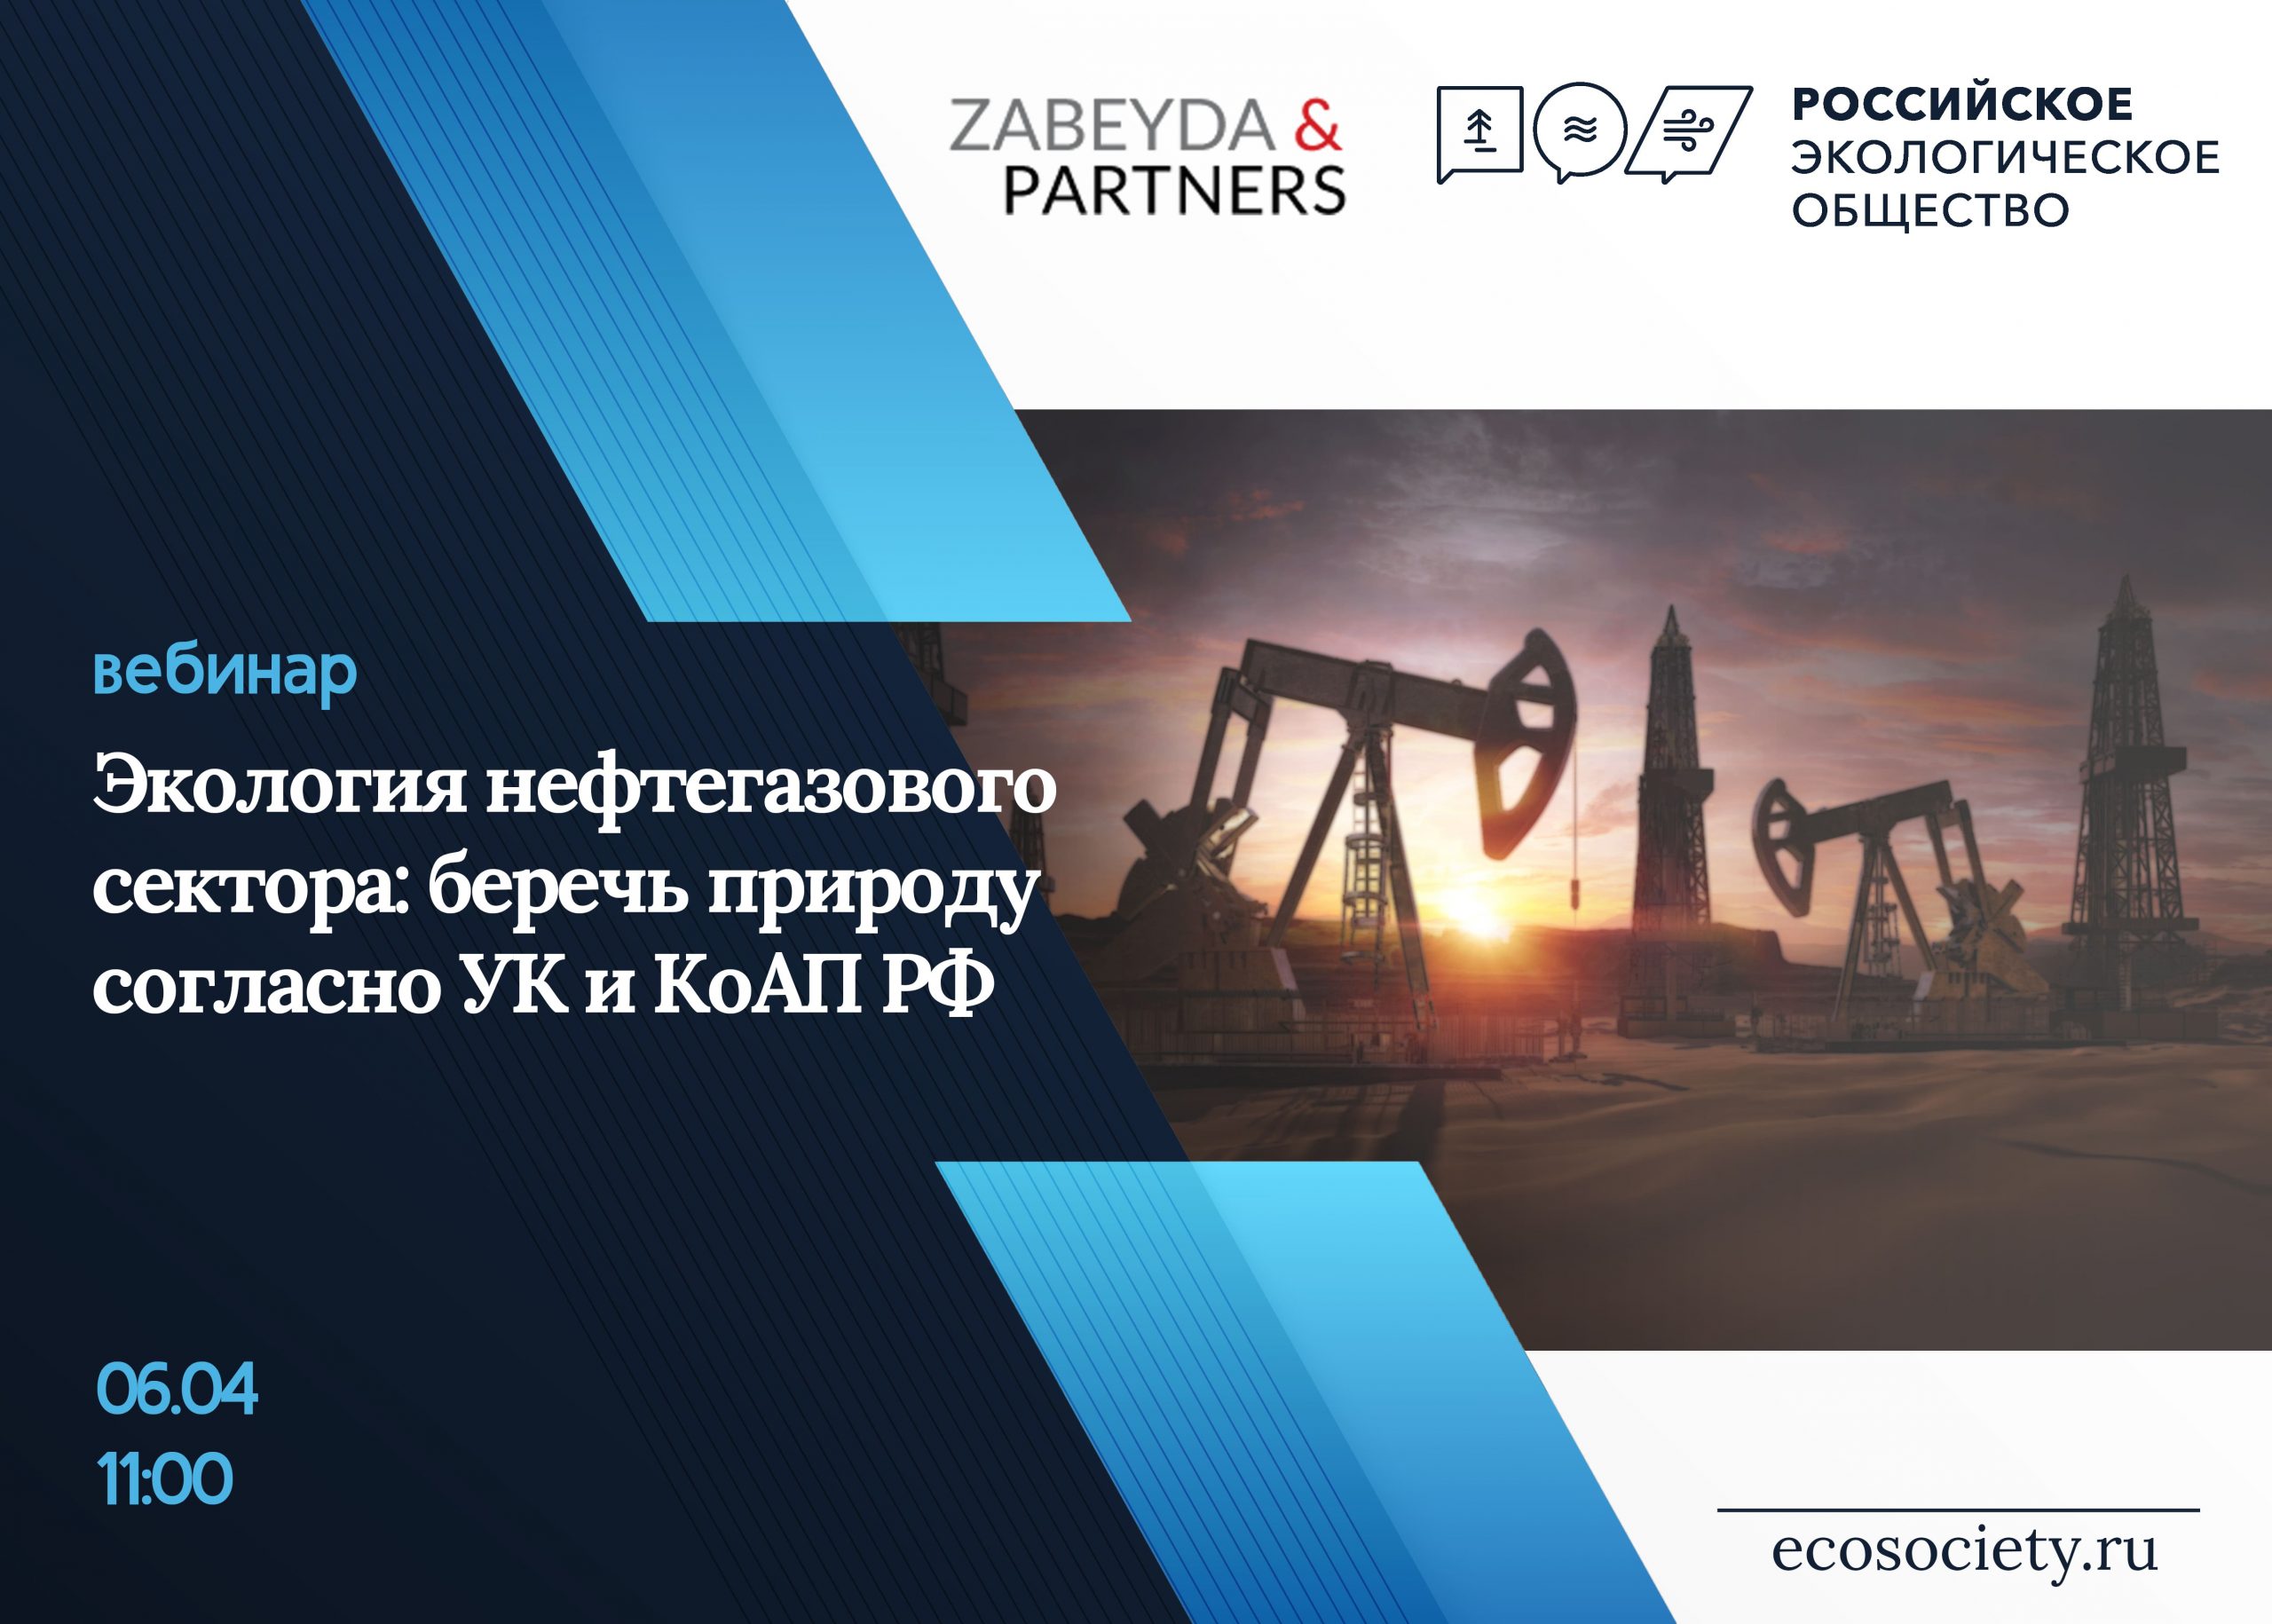 Вебинар «Экология нефтегазового сектора: беречь природу согласно УК и КоАП РФ»